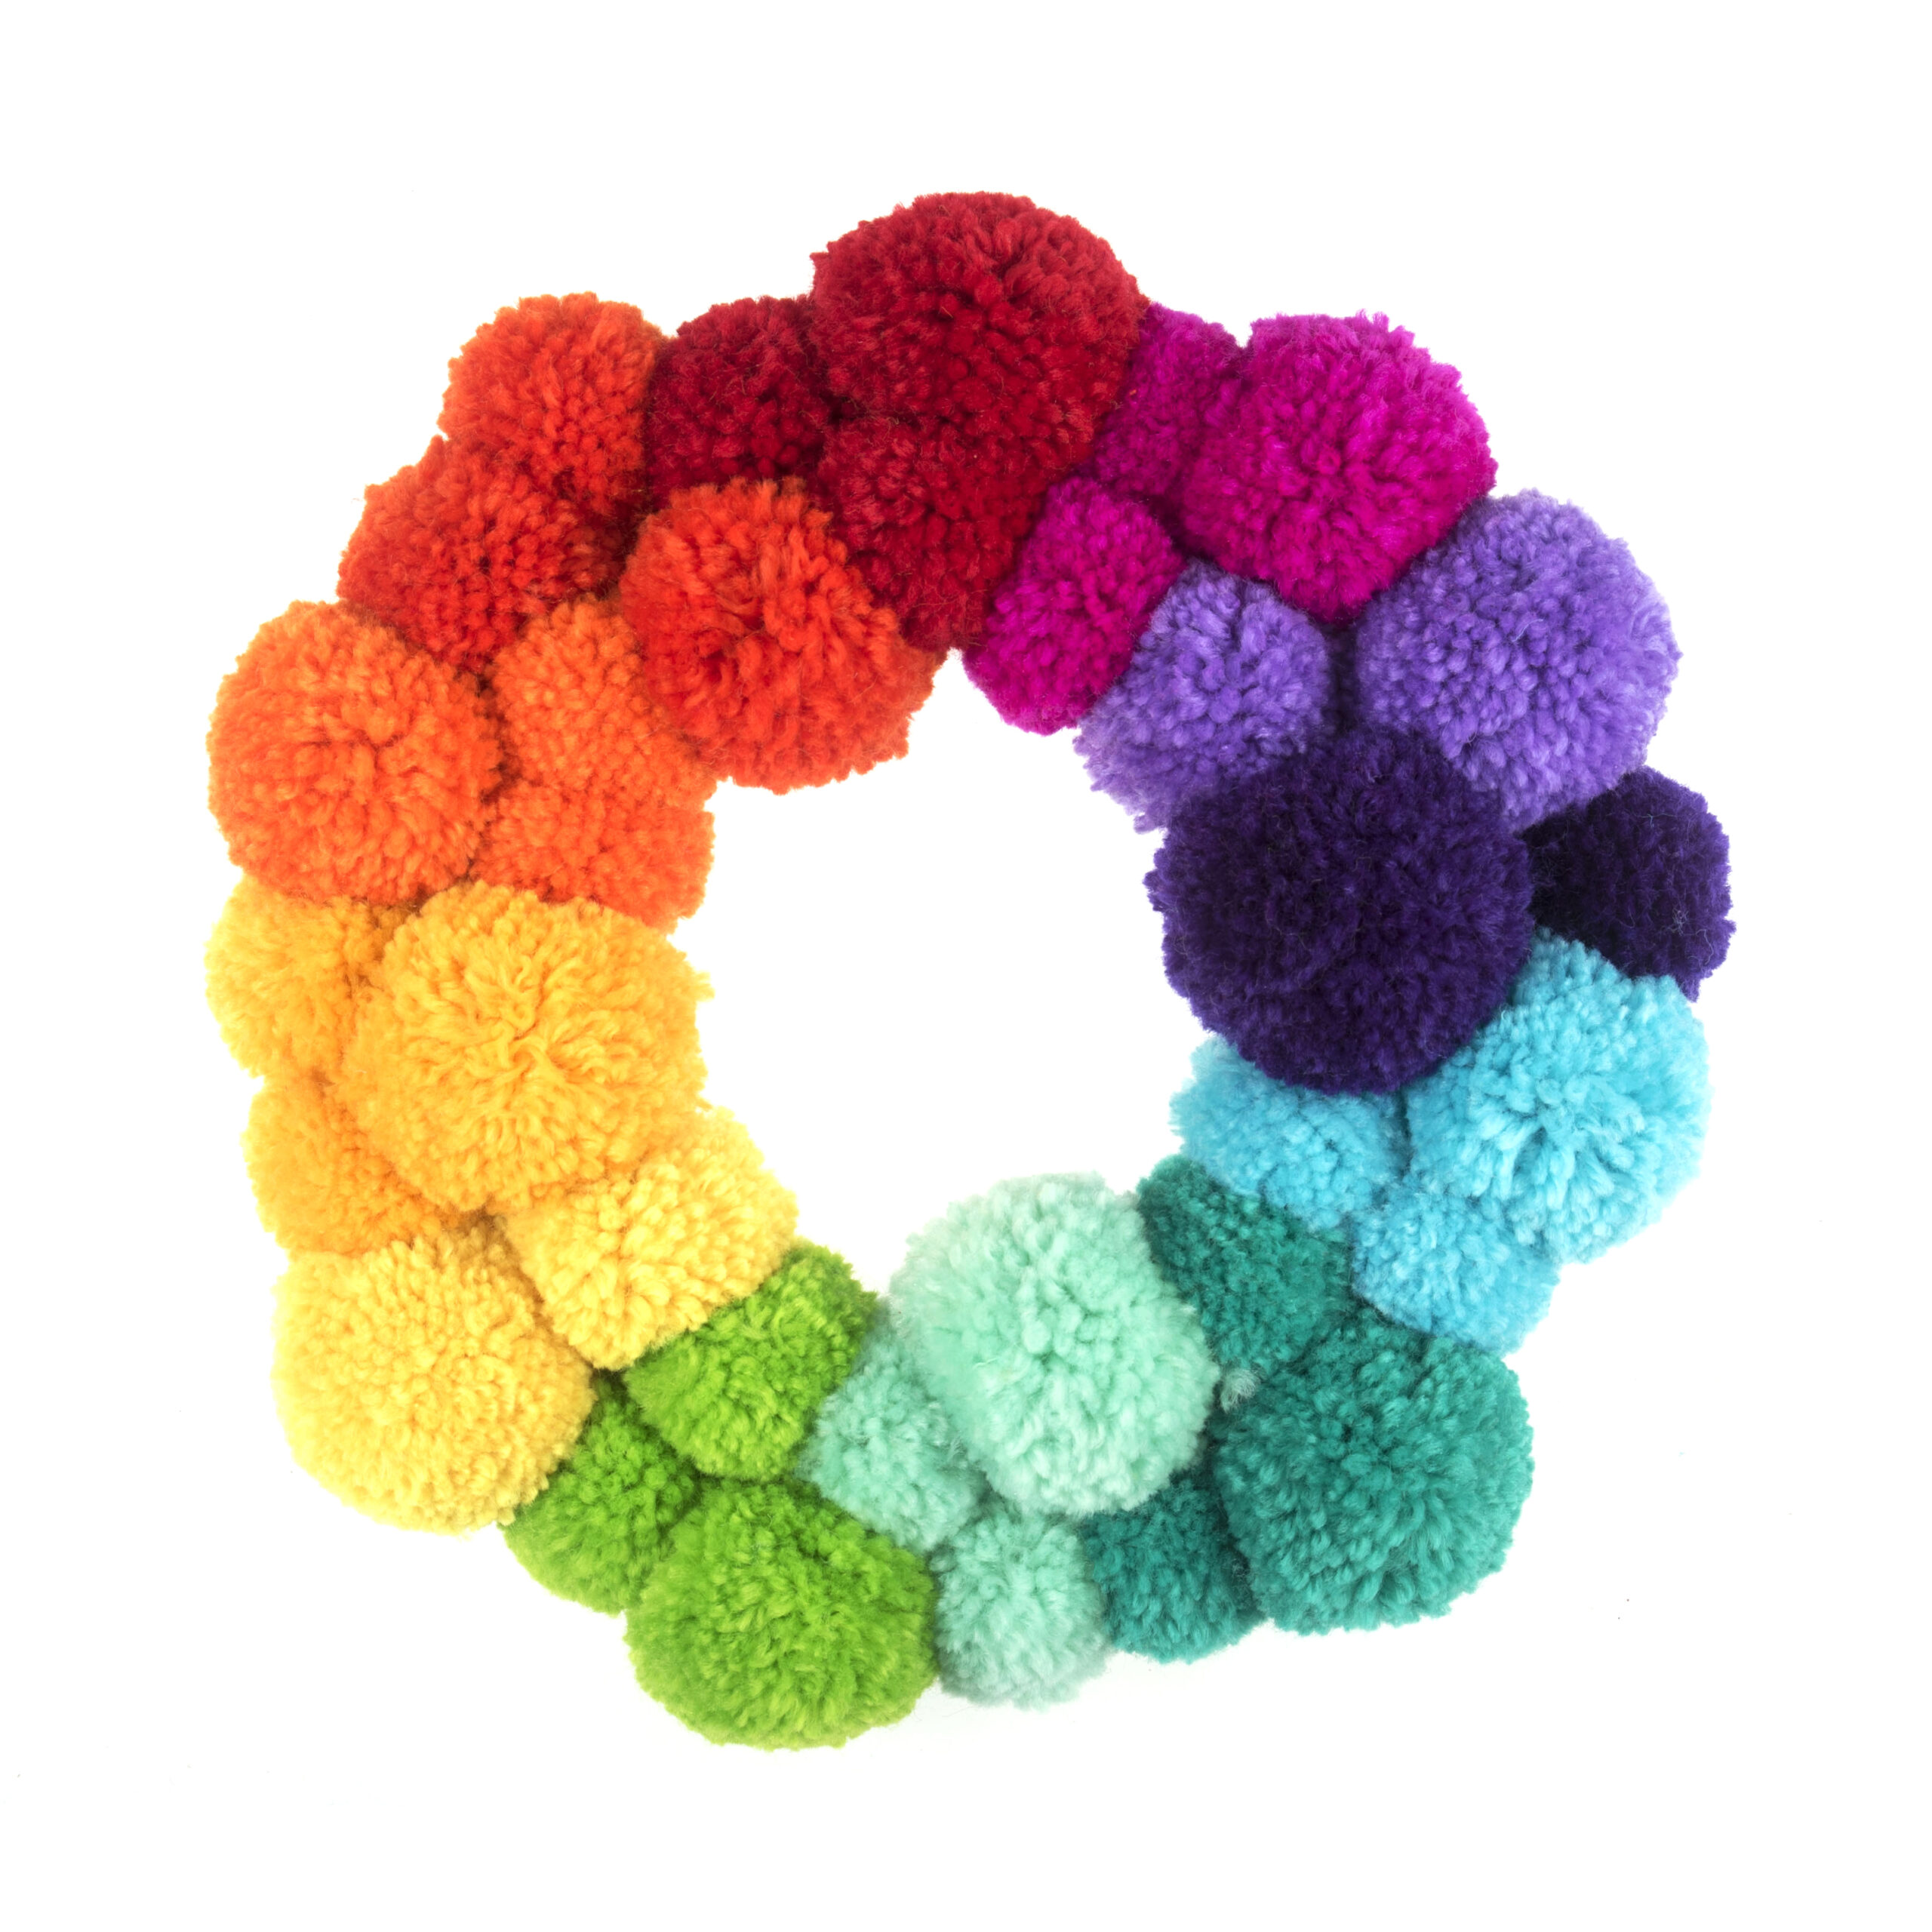 Pom Pom Wreath Kit Rainbow